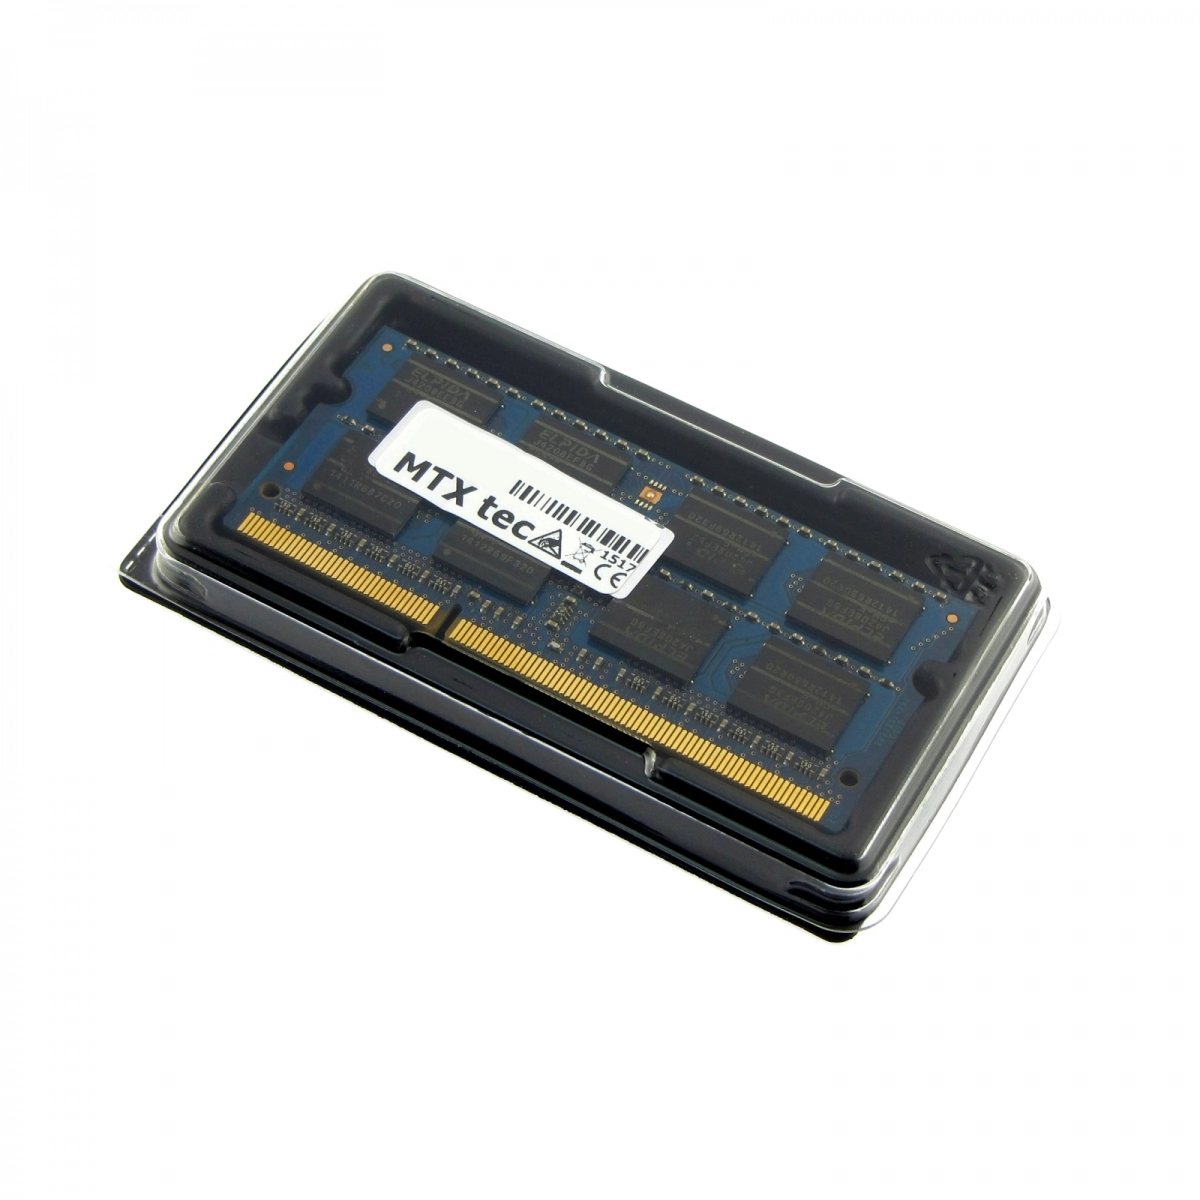 MTXtec Arbeitsspeicher 2 GB RAM für DELL Latitude E6510